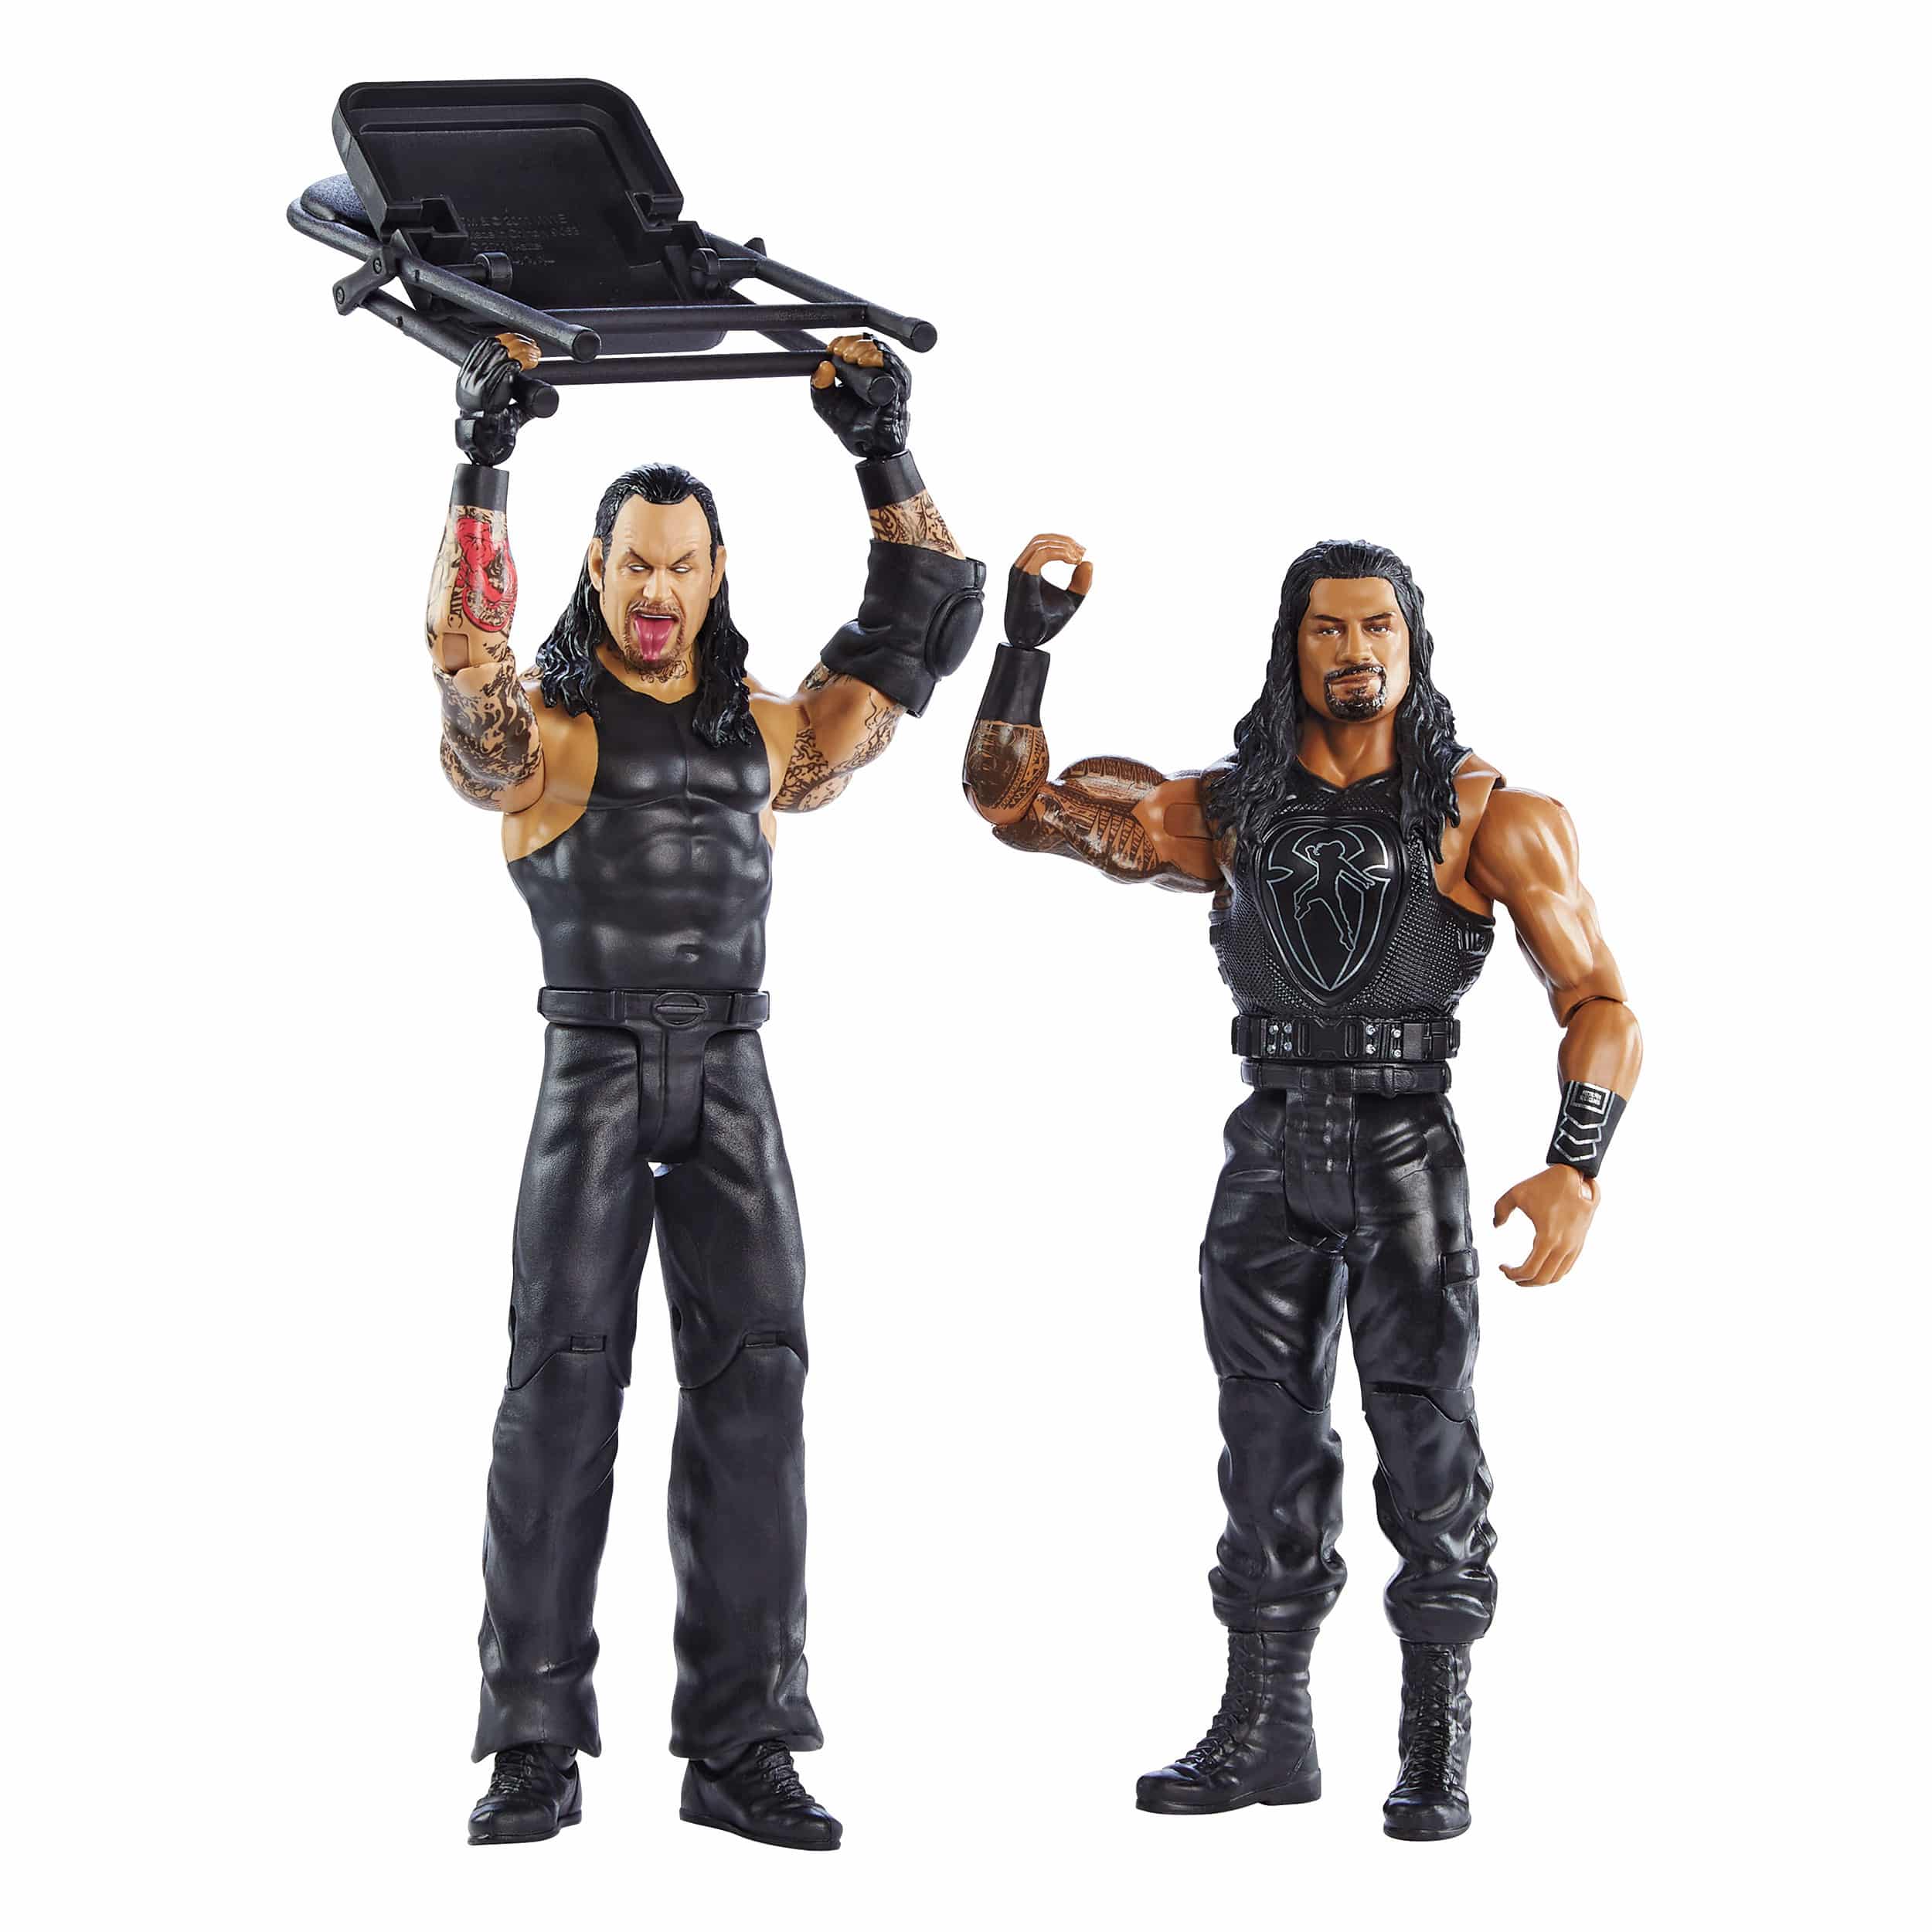 Mattel - WWE Series 66 - Battle Pack - Roman Reigns & Undertaker